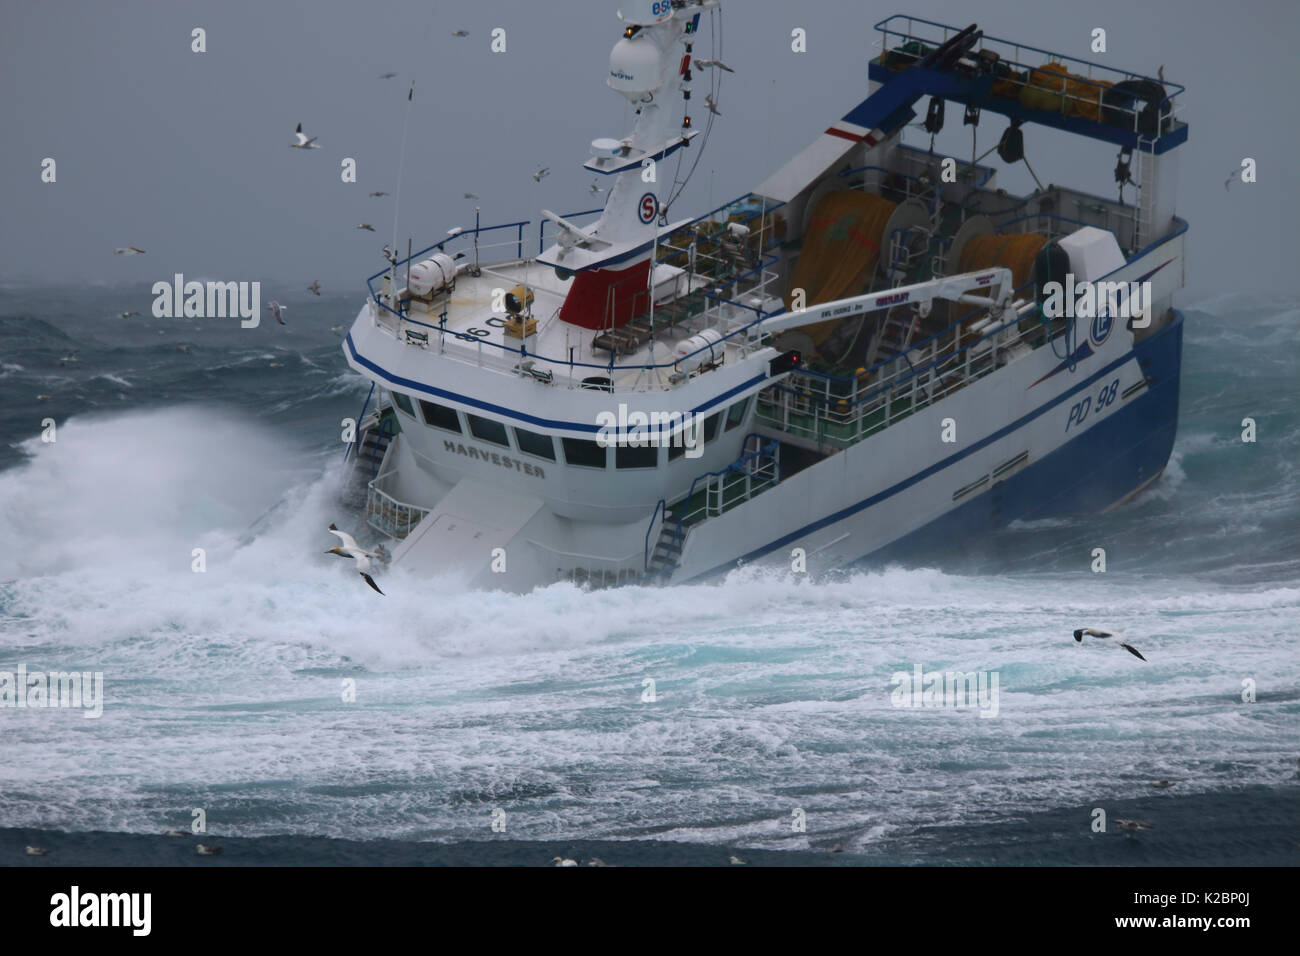 Peschereccio 'Harvester' combattendo in una tempesta di neve sul Mare del Nord, febbraio 2016. Proprietà rilasciato. Foto Stock